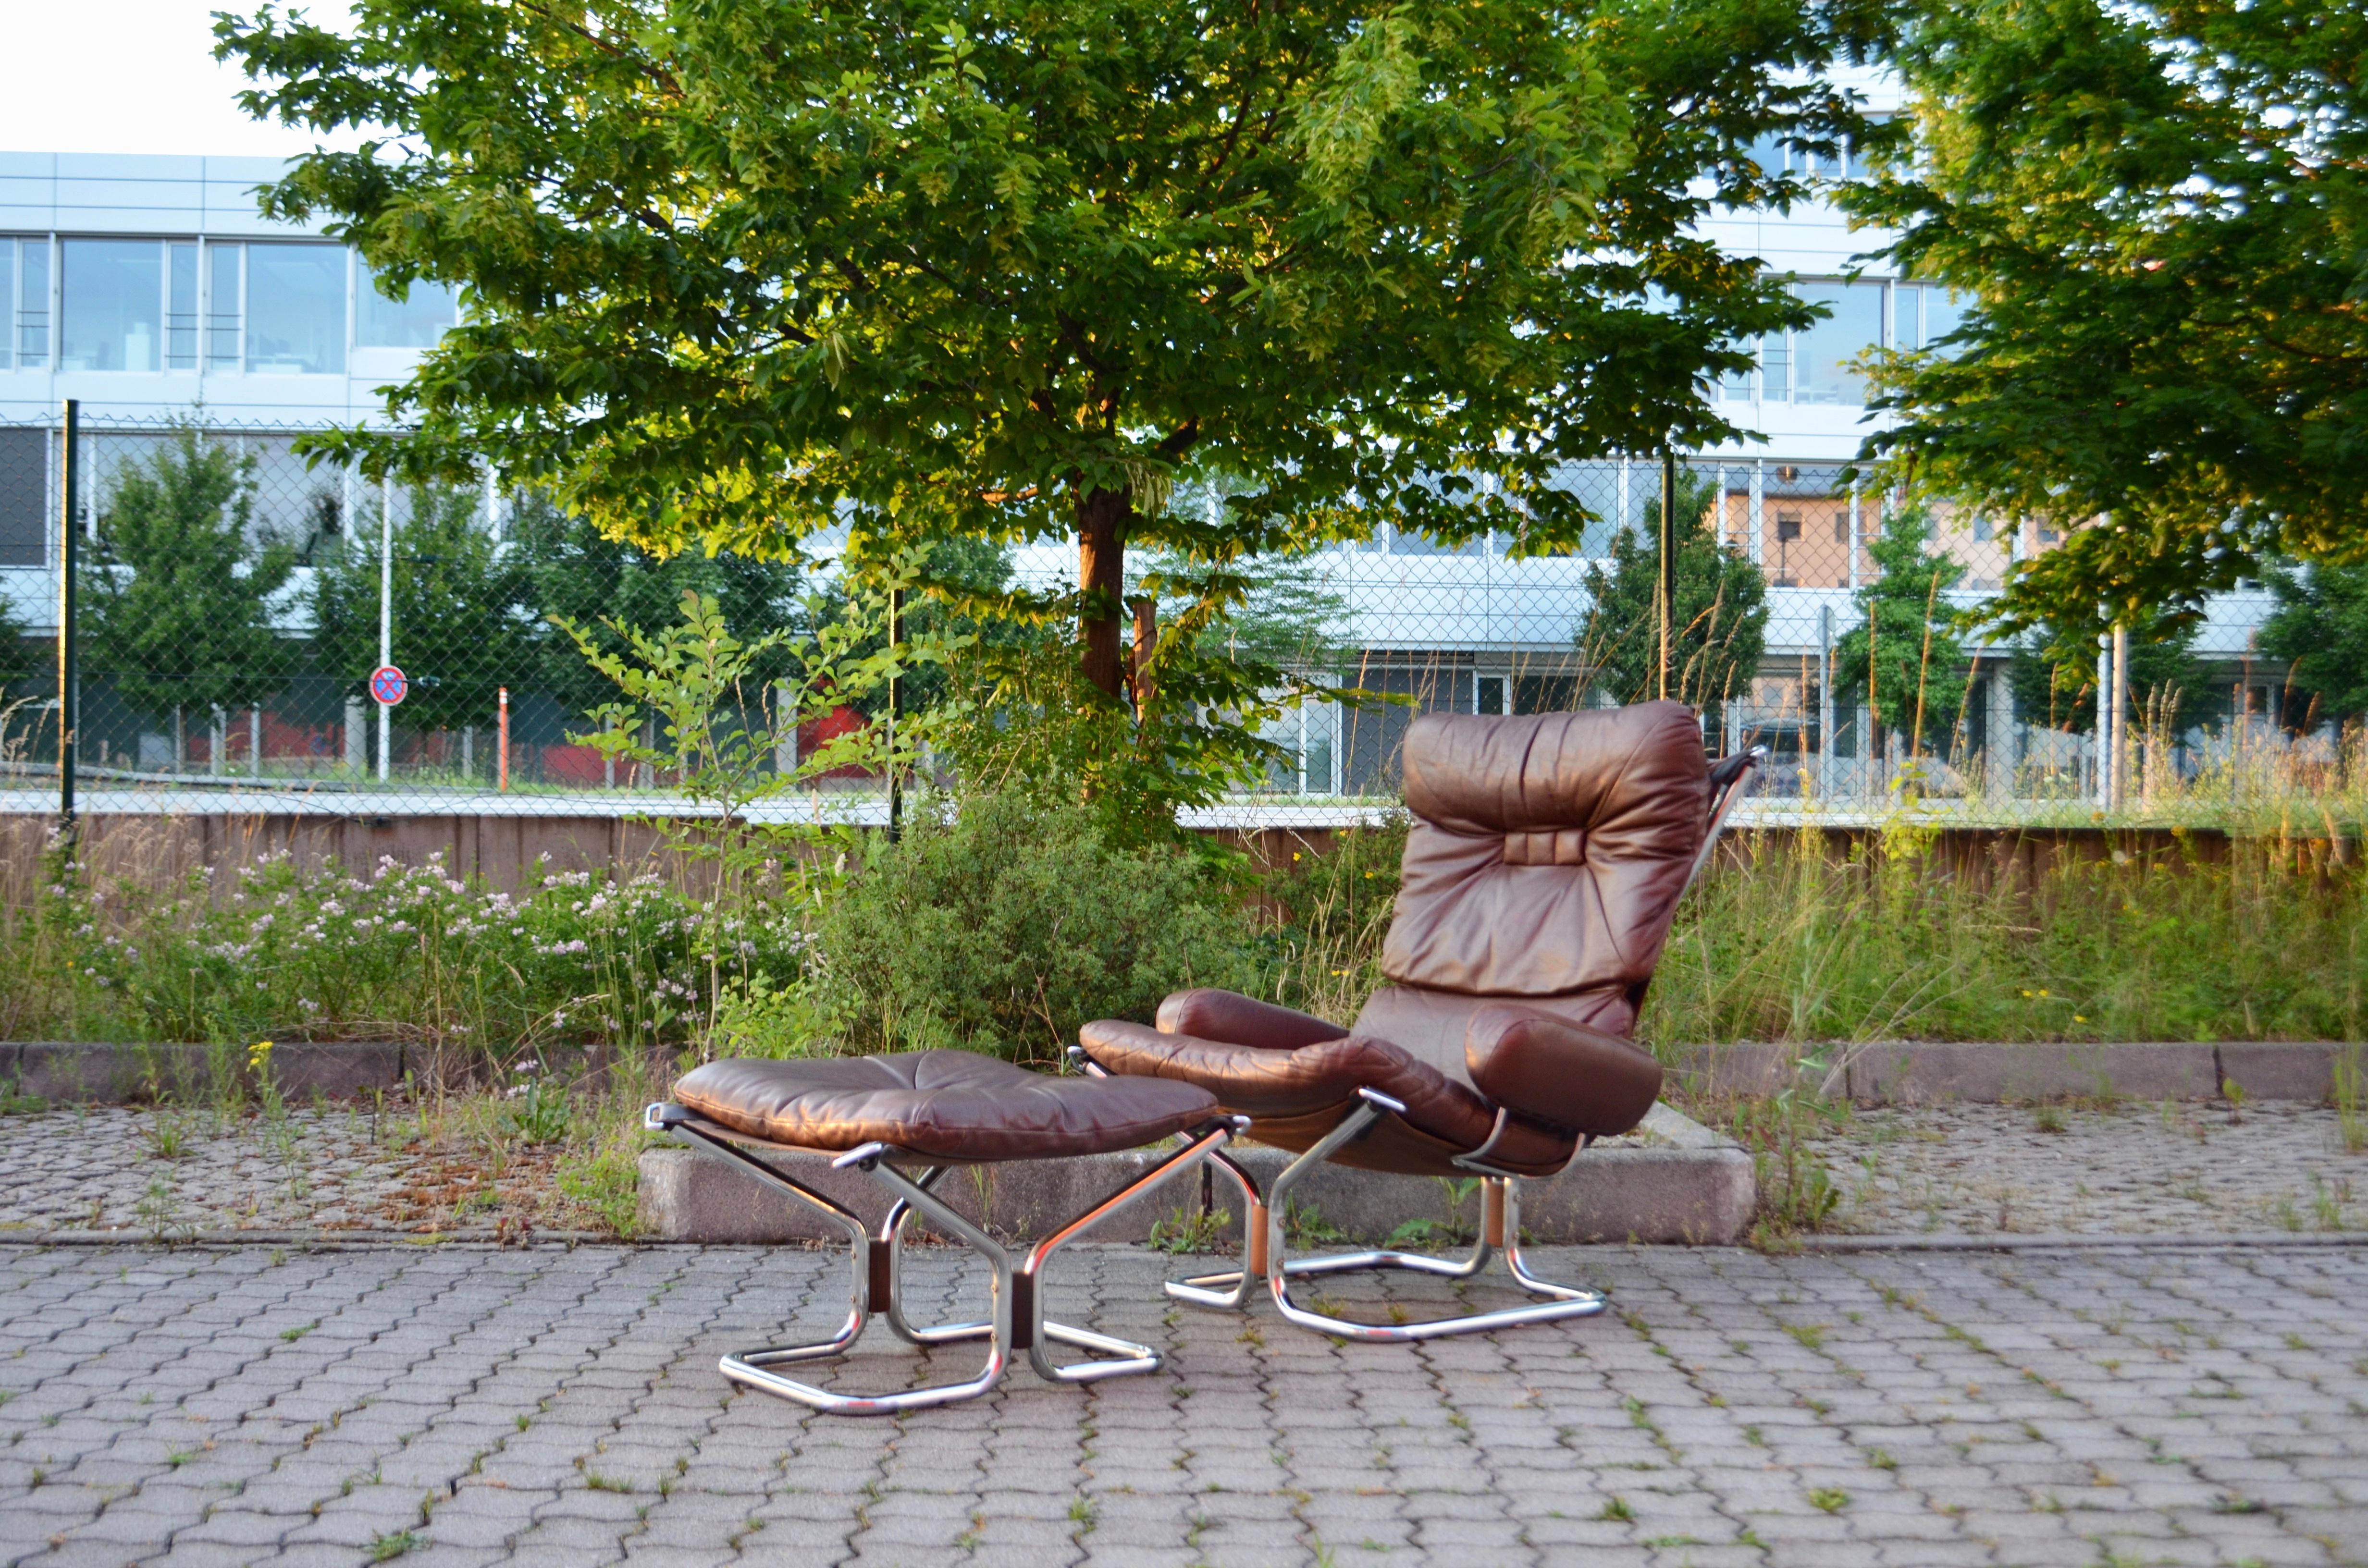 Dieser 'Wing Wingback Lounge Chair und Ottomane wurden von Harald Relling entworfen und von Westnofa in Norwegen hergestellt.
Sie sind aus braunem Anilinleder auf verchromtem Stahlrohrrahmen und Segeltuch gefertigt.
Die losen weichen Kissen sorgen